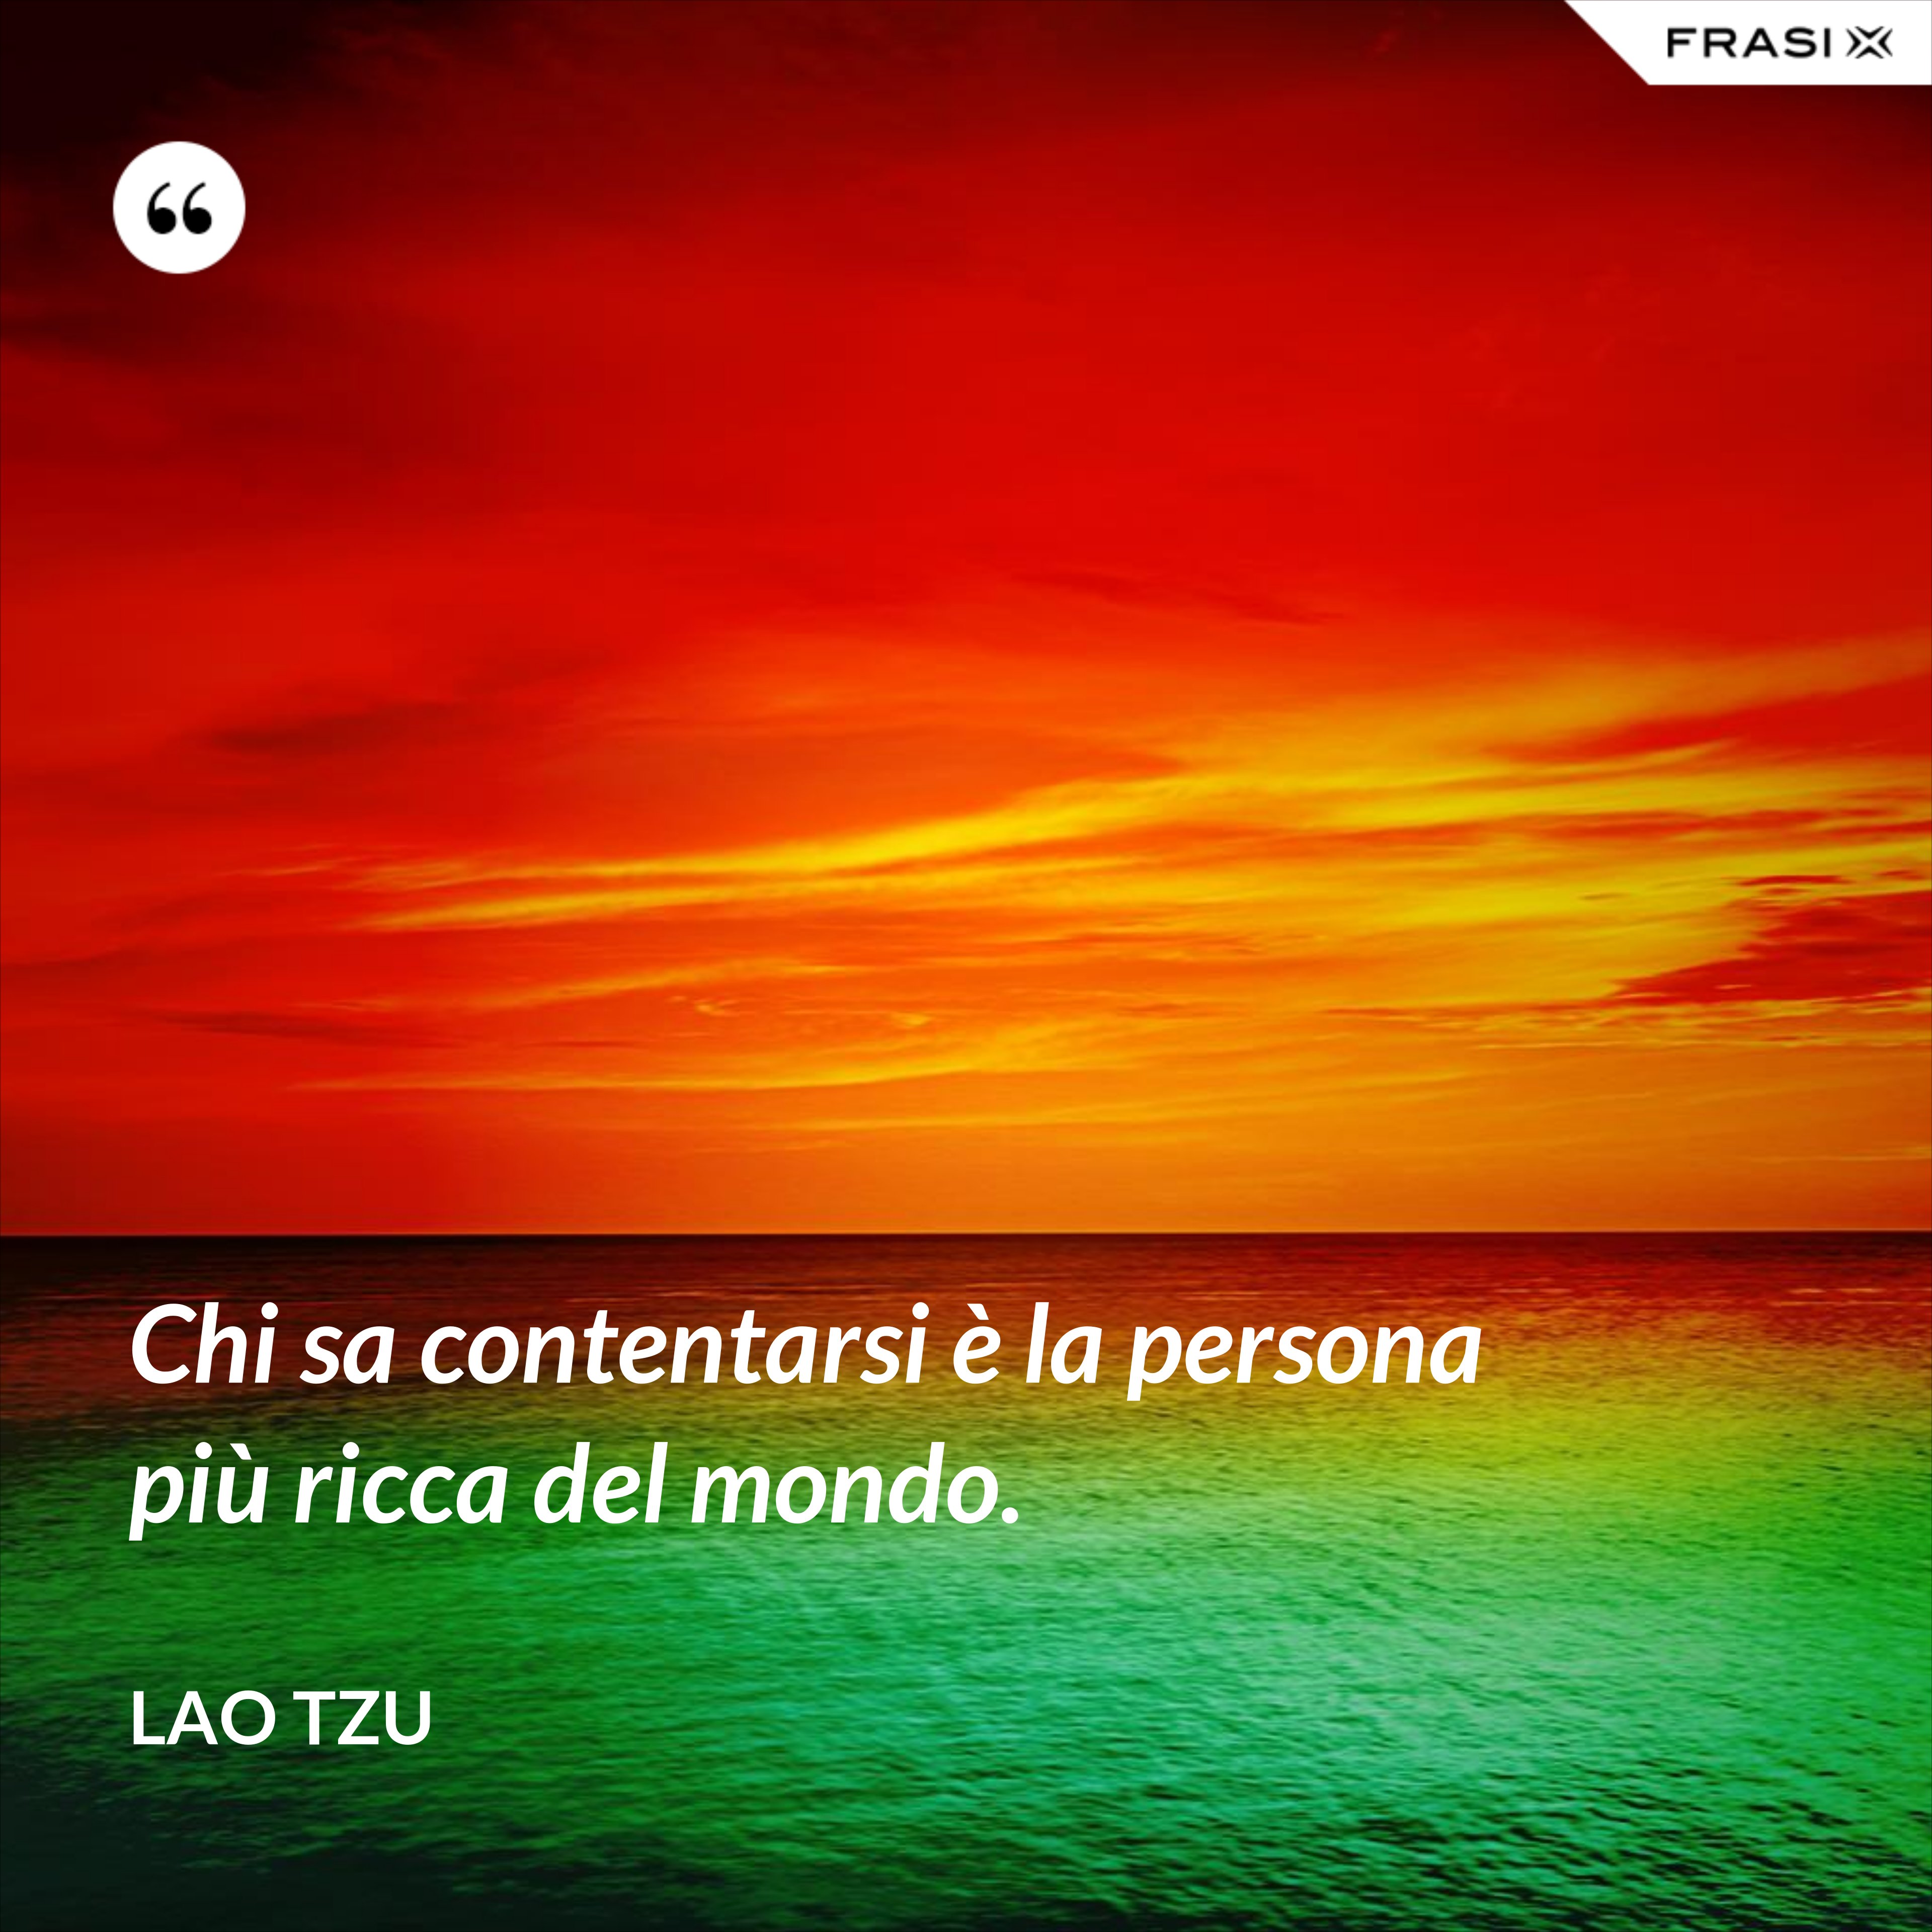 Chi sa contentarsi è la persona più ricca del mondo. - Lao Tzu